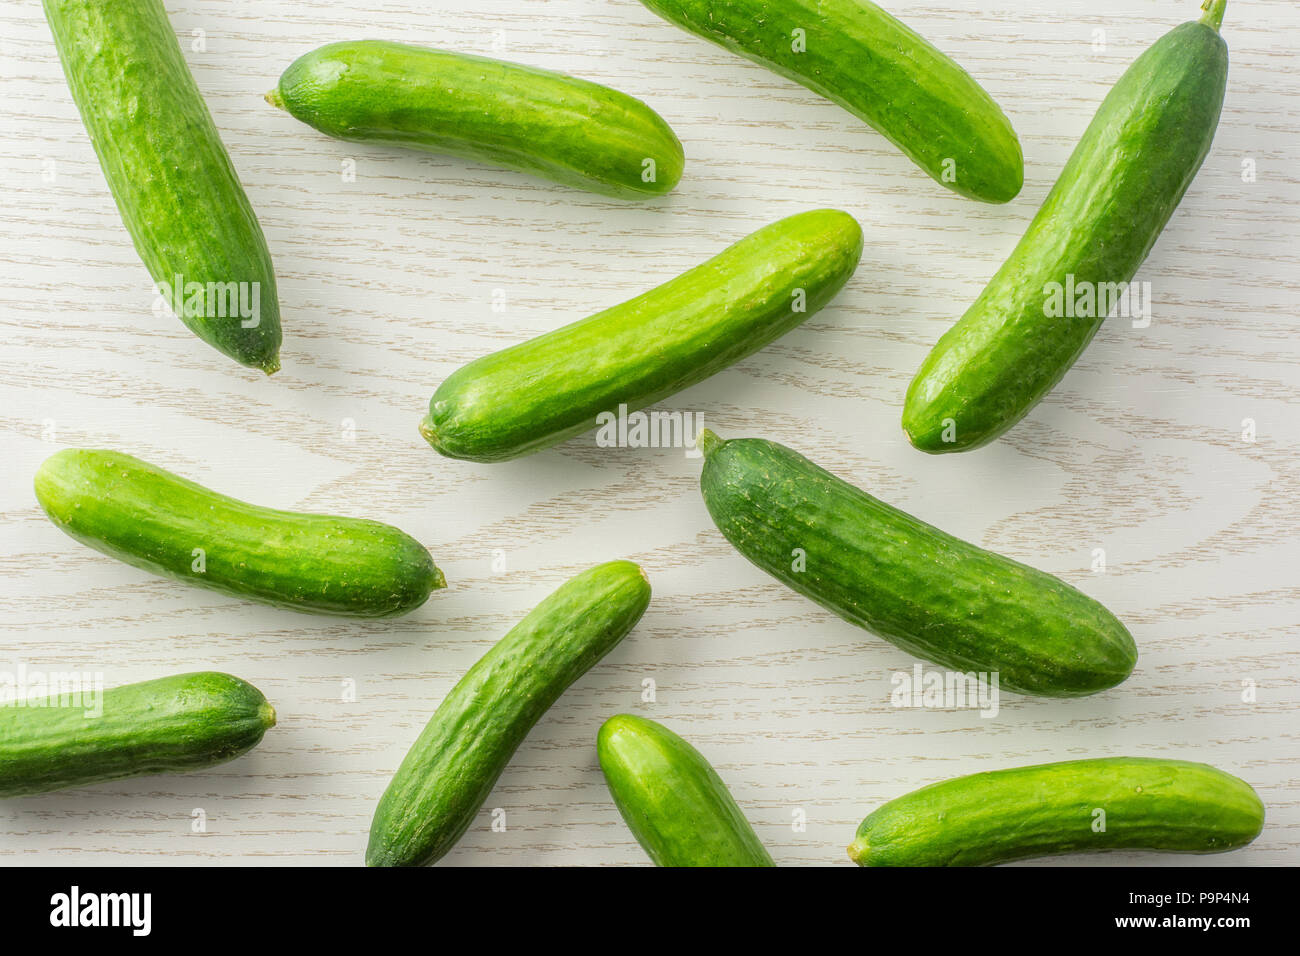 https://c8.alamy.com/comp/P9P4N4/fresh-mini-cucumbers-flatlay-on-grey-wood-background-P9P4N4.jpg